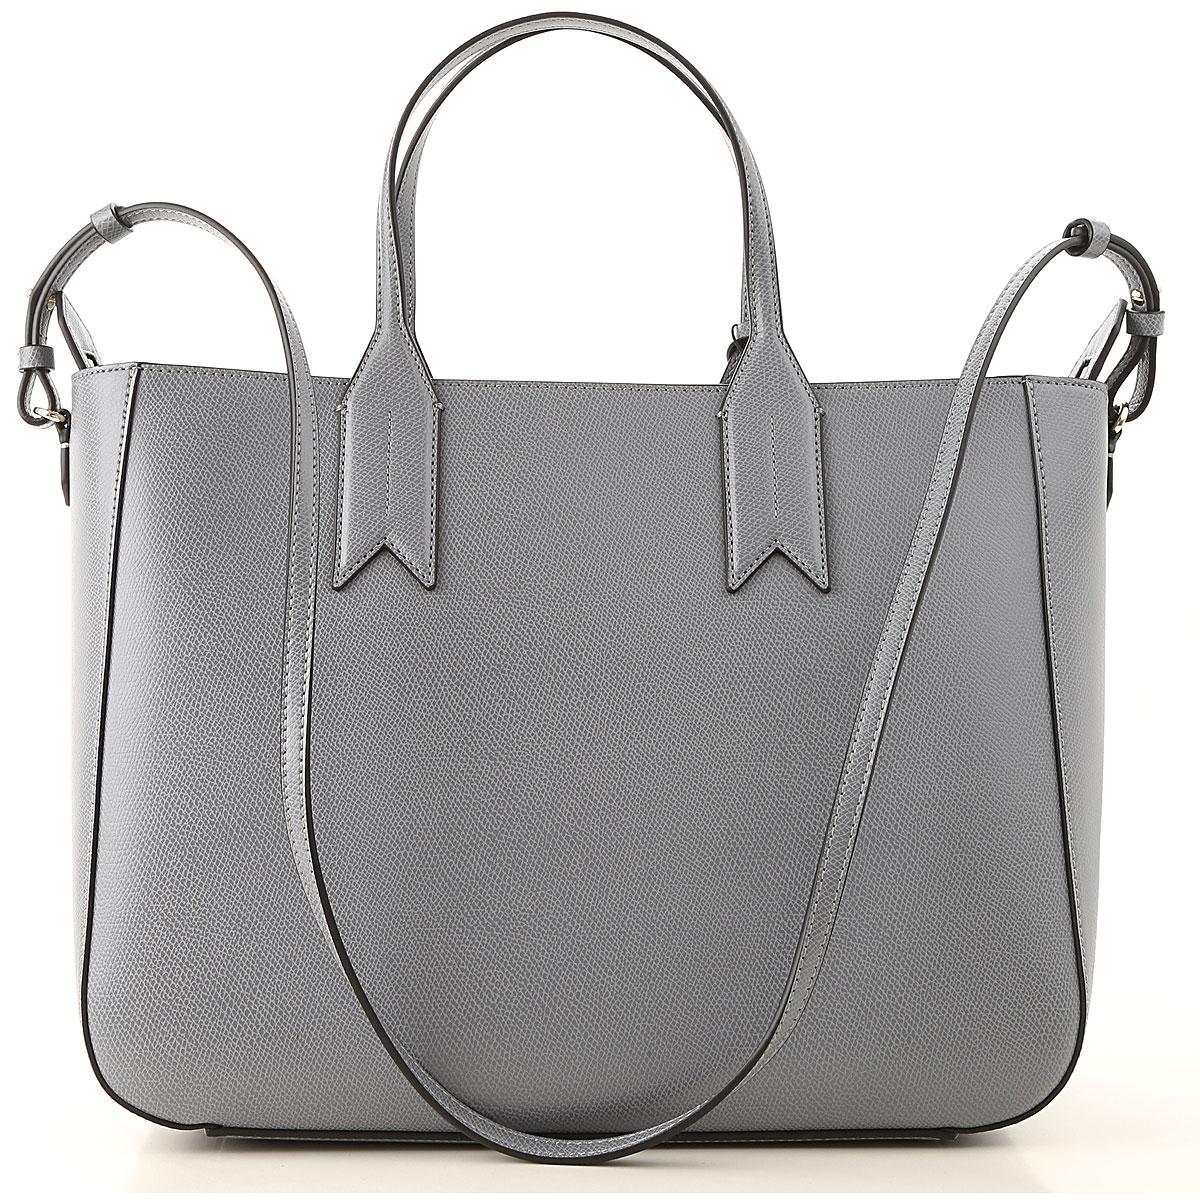 Emporio Armani Tote Bag On Sale in Gray - Lyst